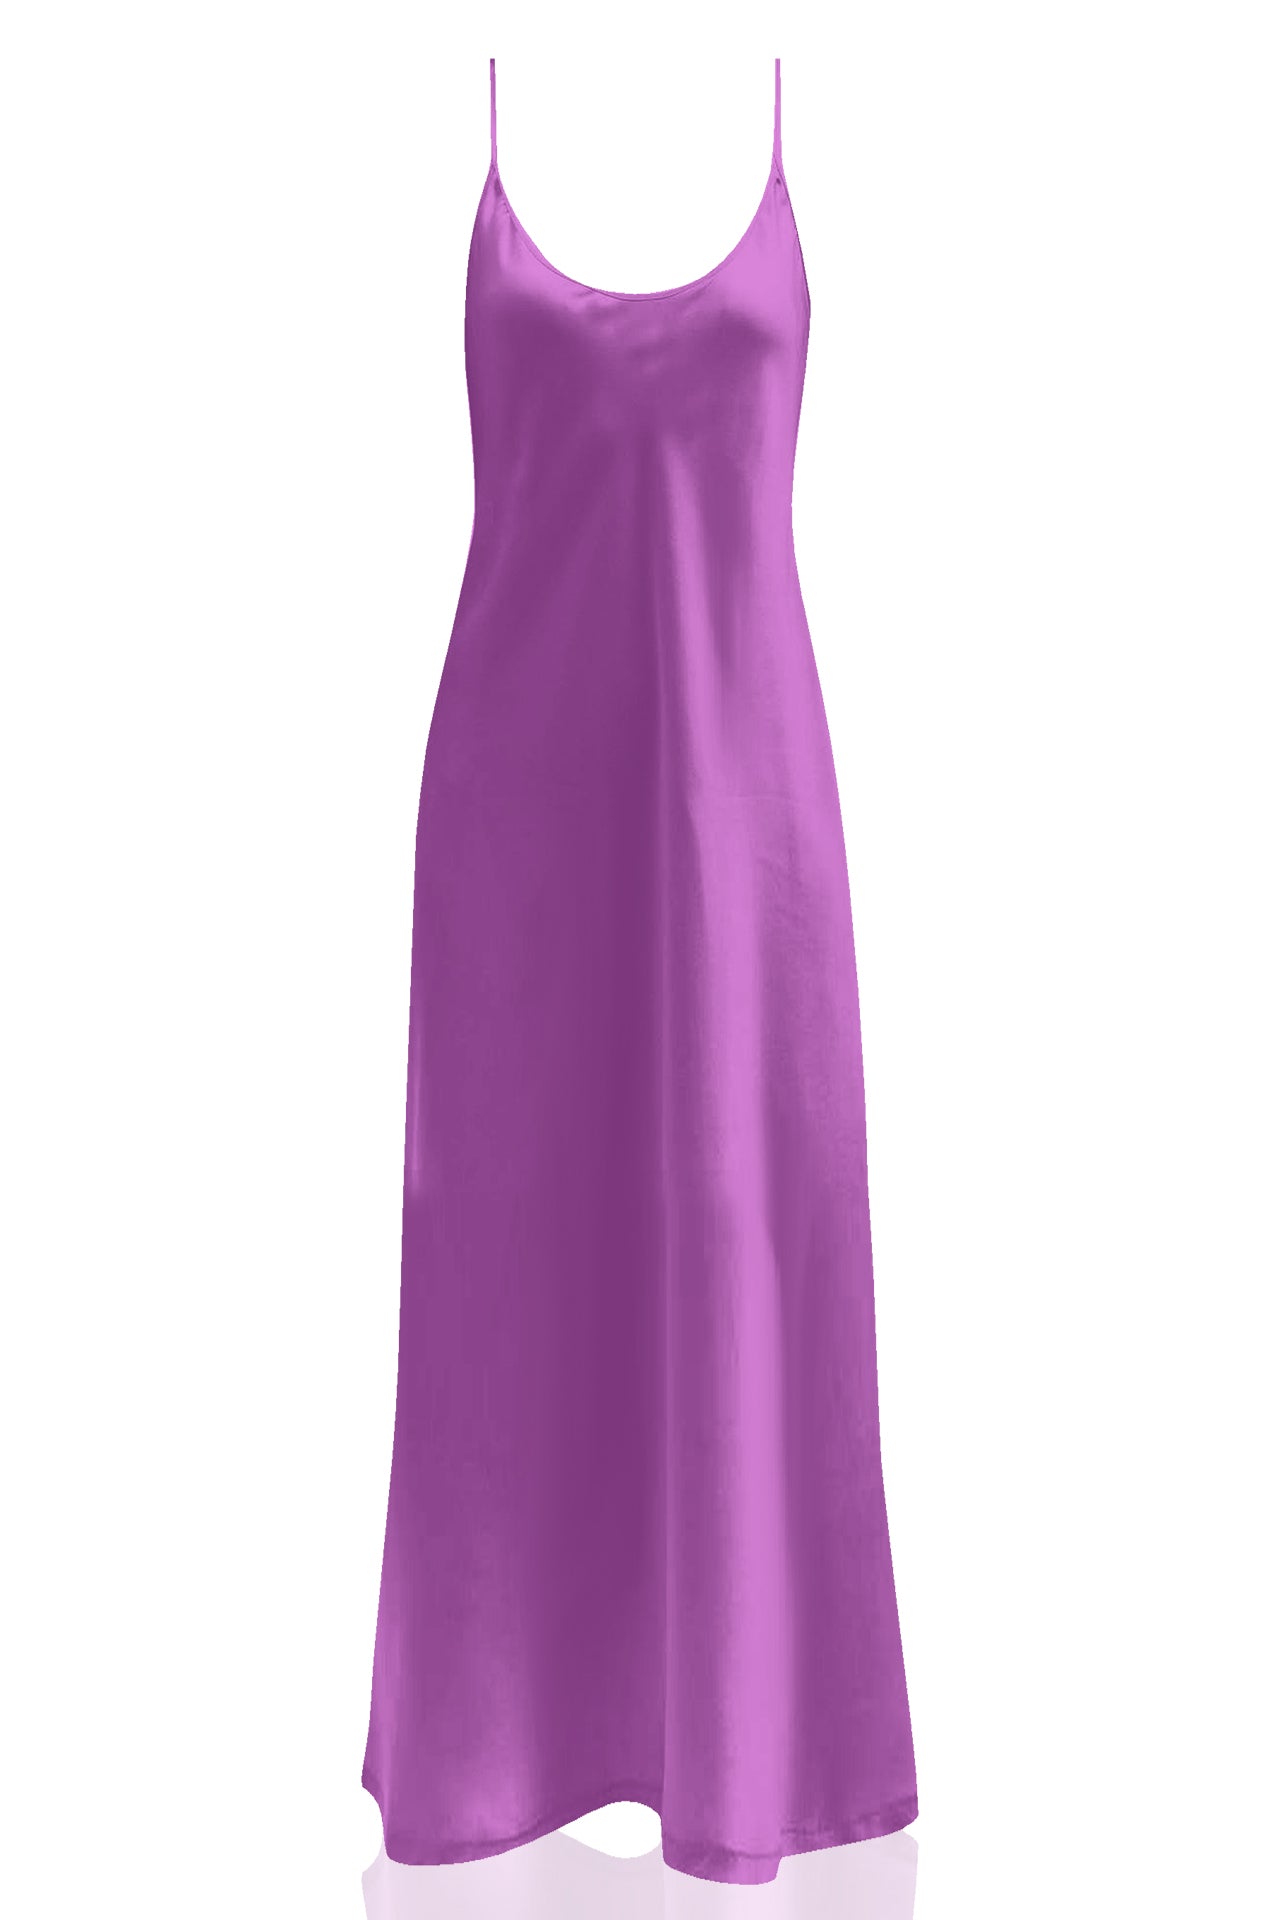 "Kyle X Shahida" "full length slip dress" "purple slip dress" "long cami dress"